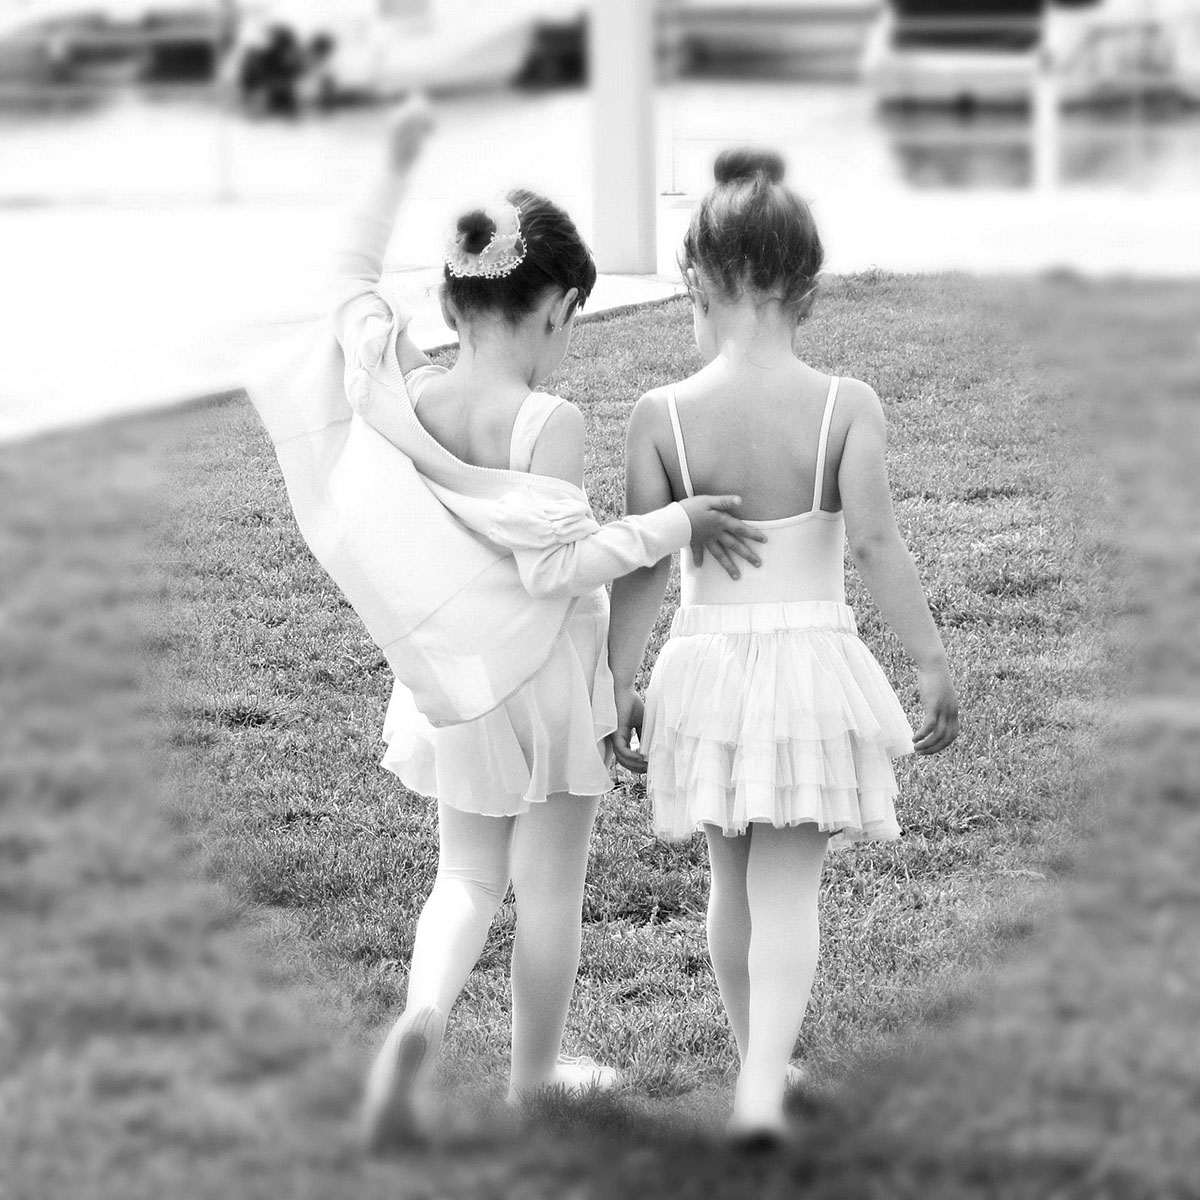 Two ballerina girls walking